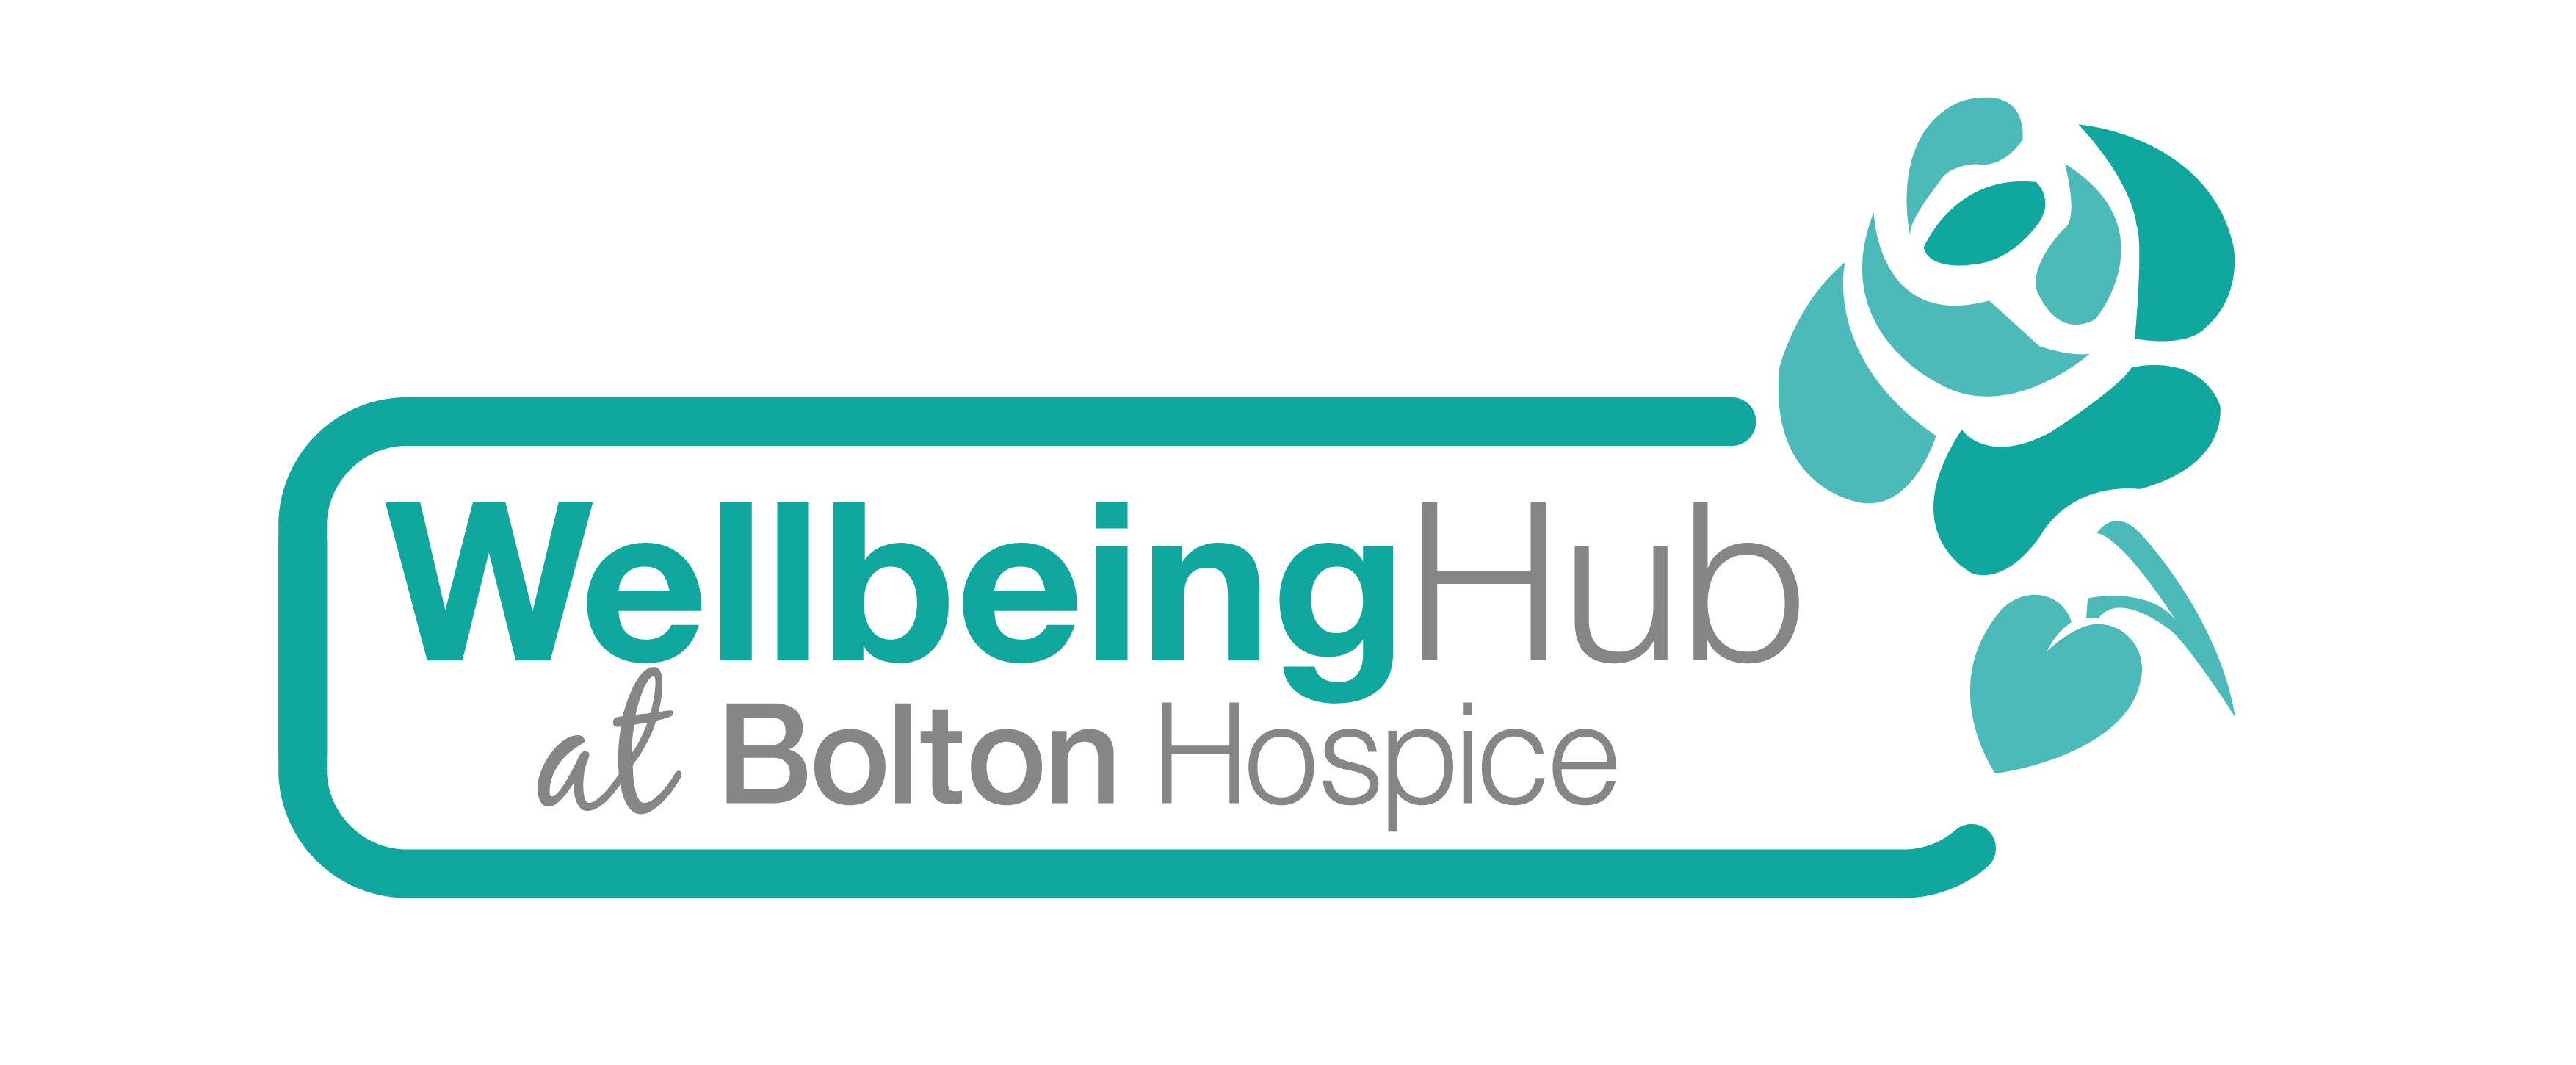 Wellbeing Hub logo